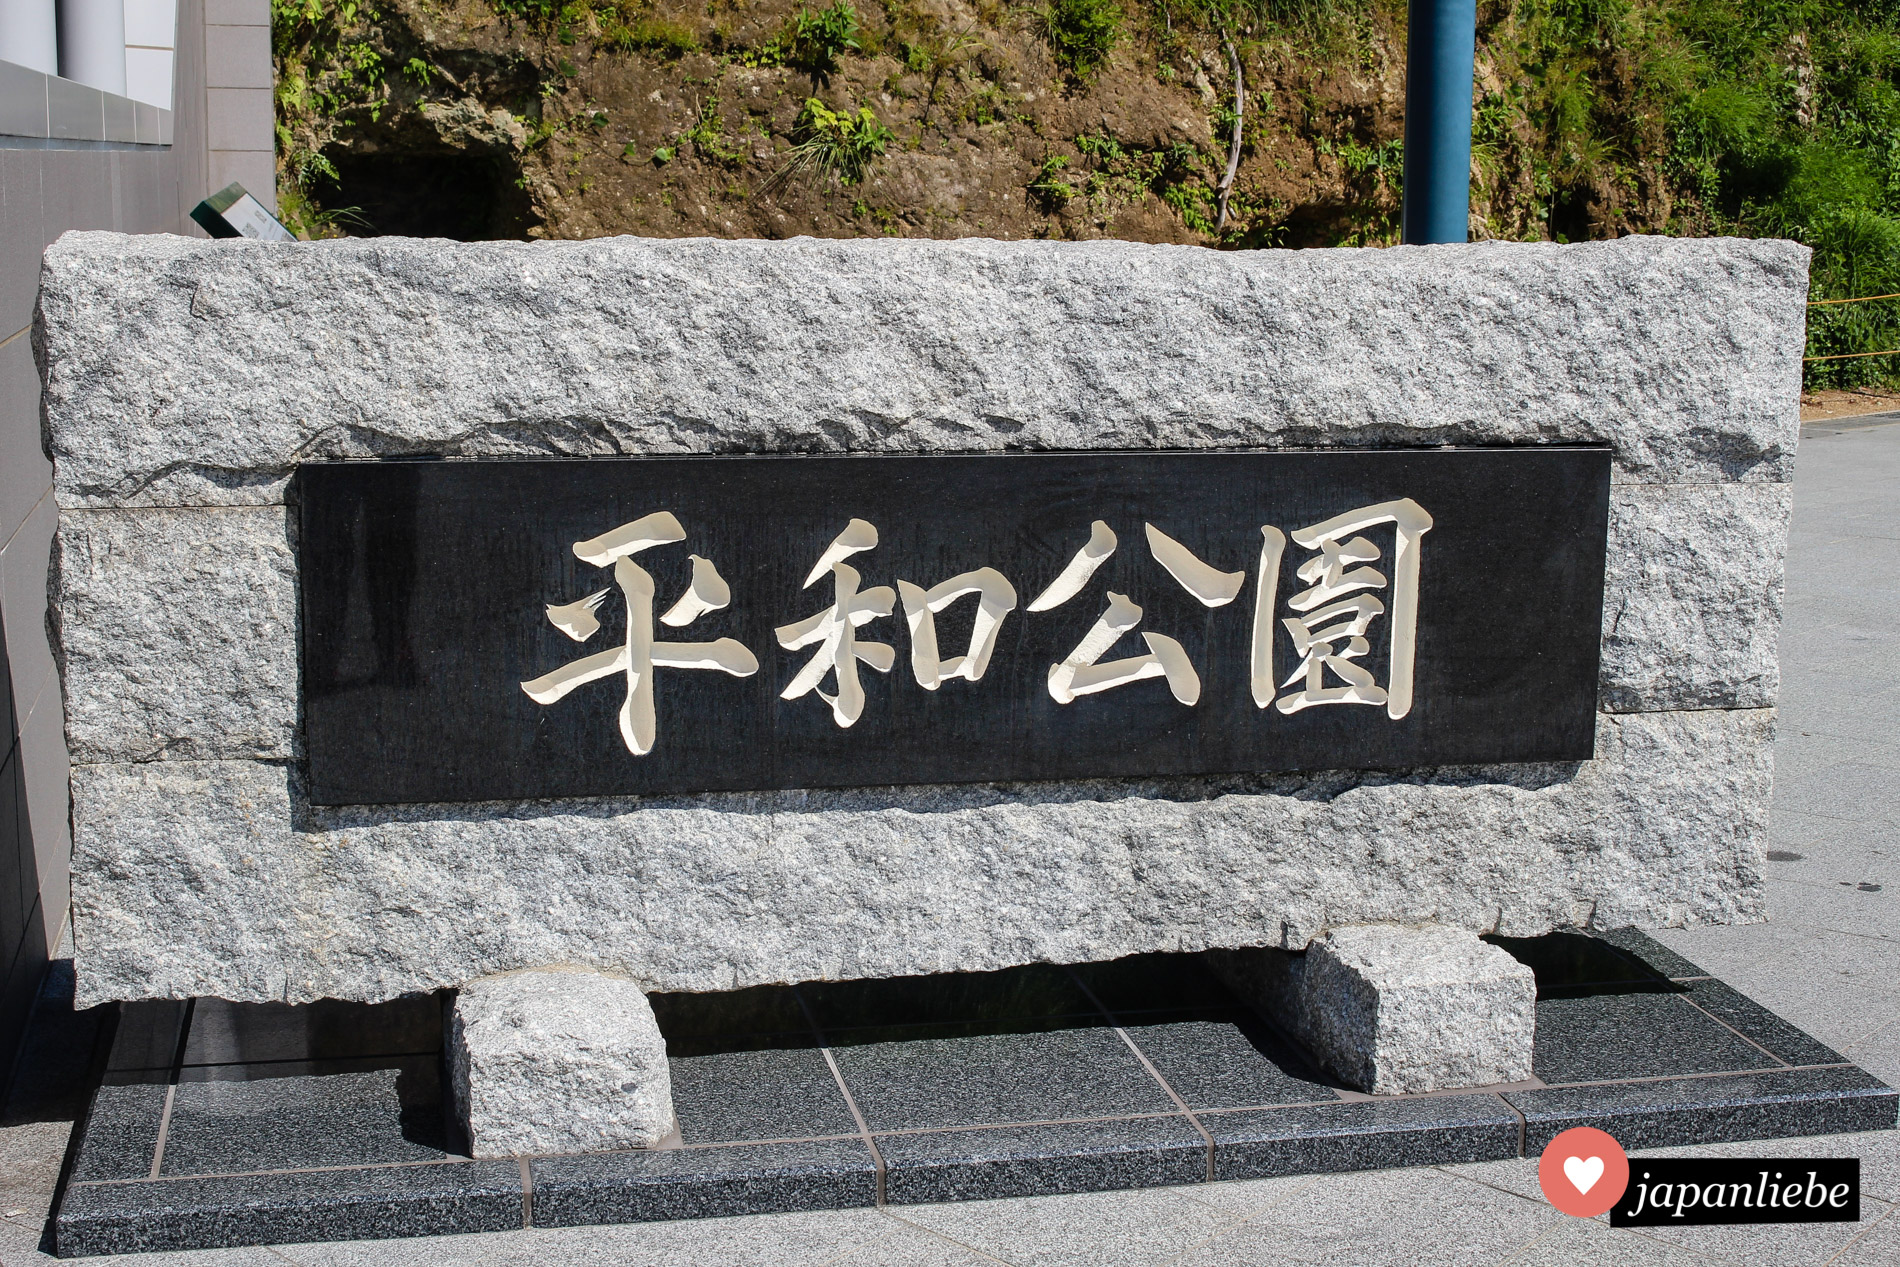 Das Schild zum Friedenspark in Nagasaki liest sich heiwa kōen.